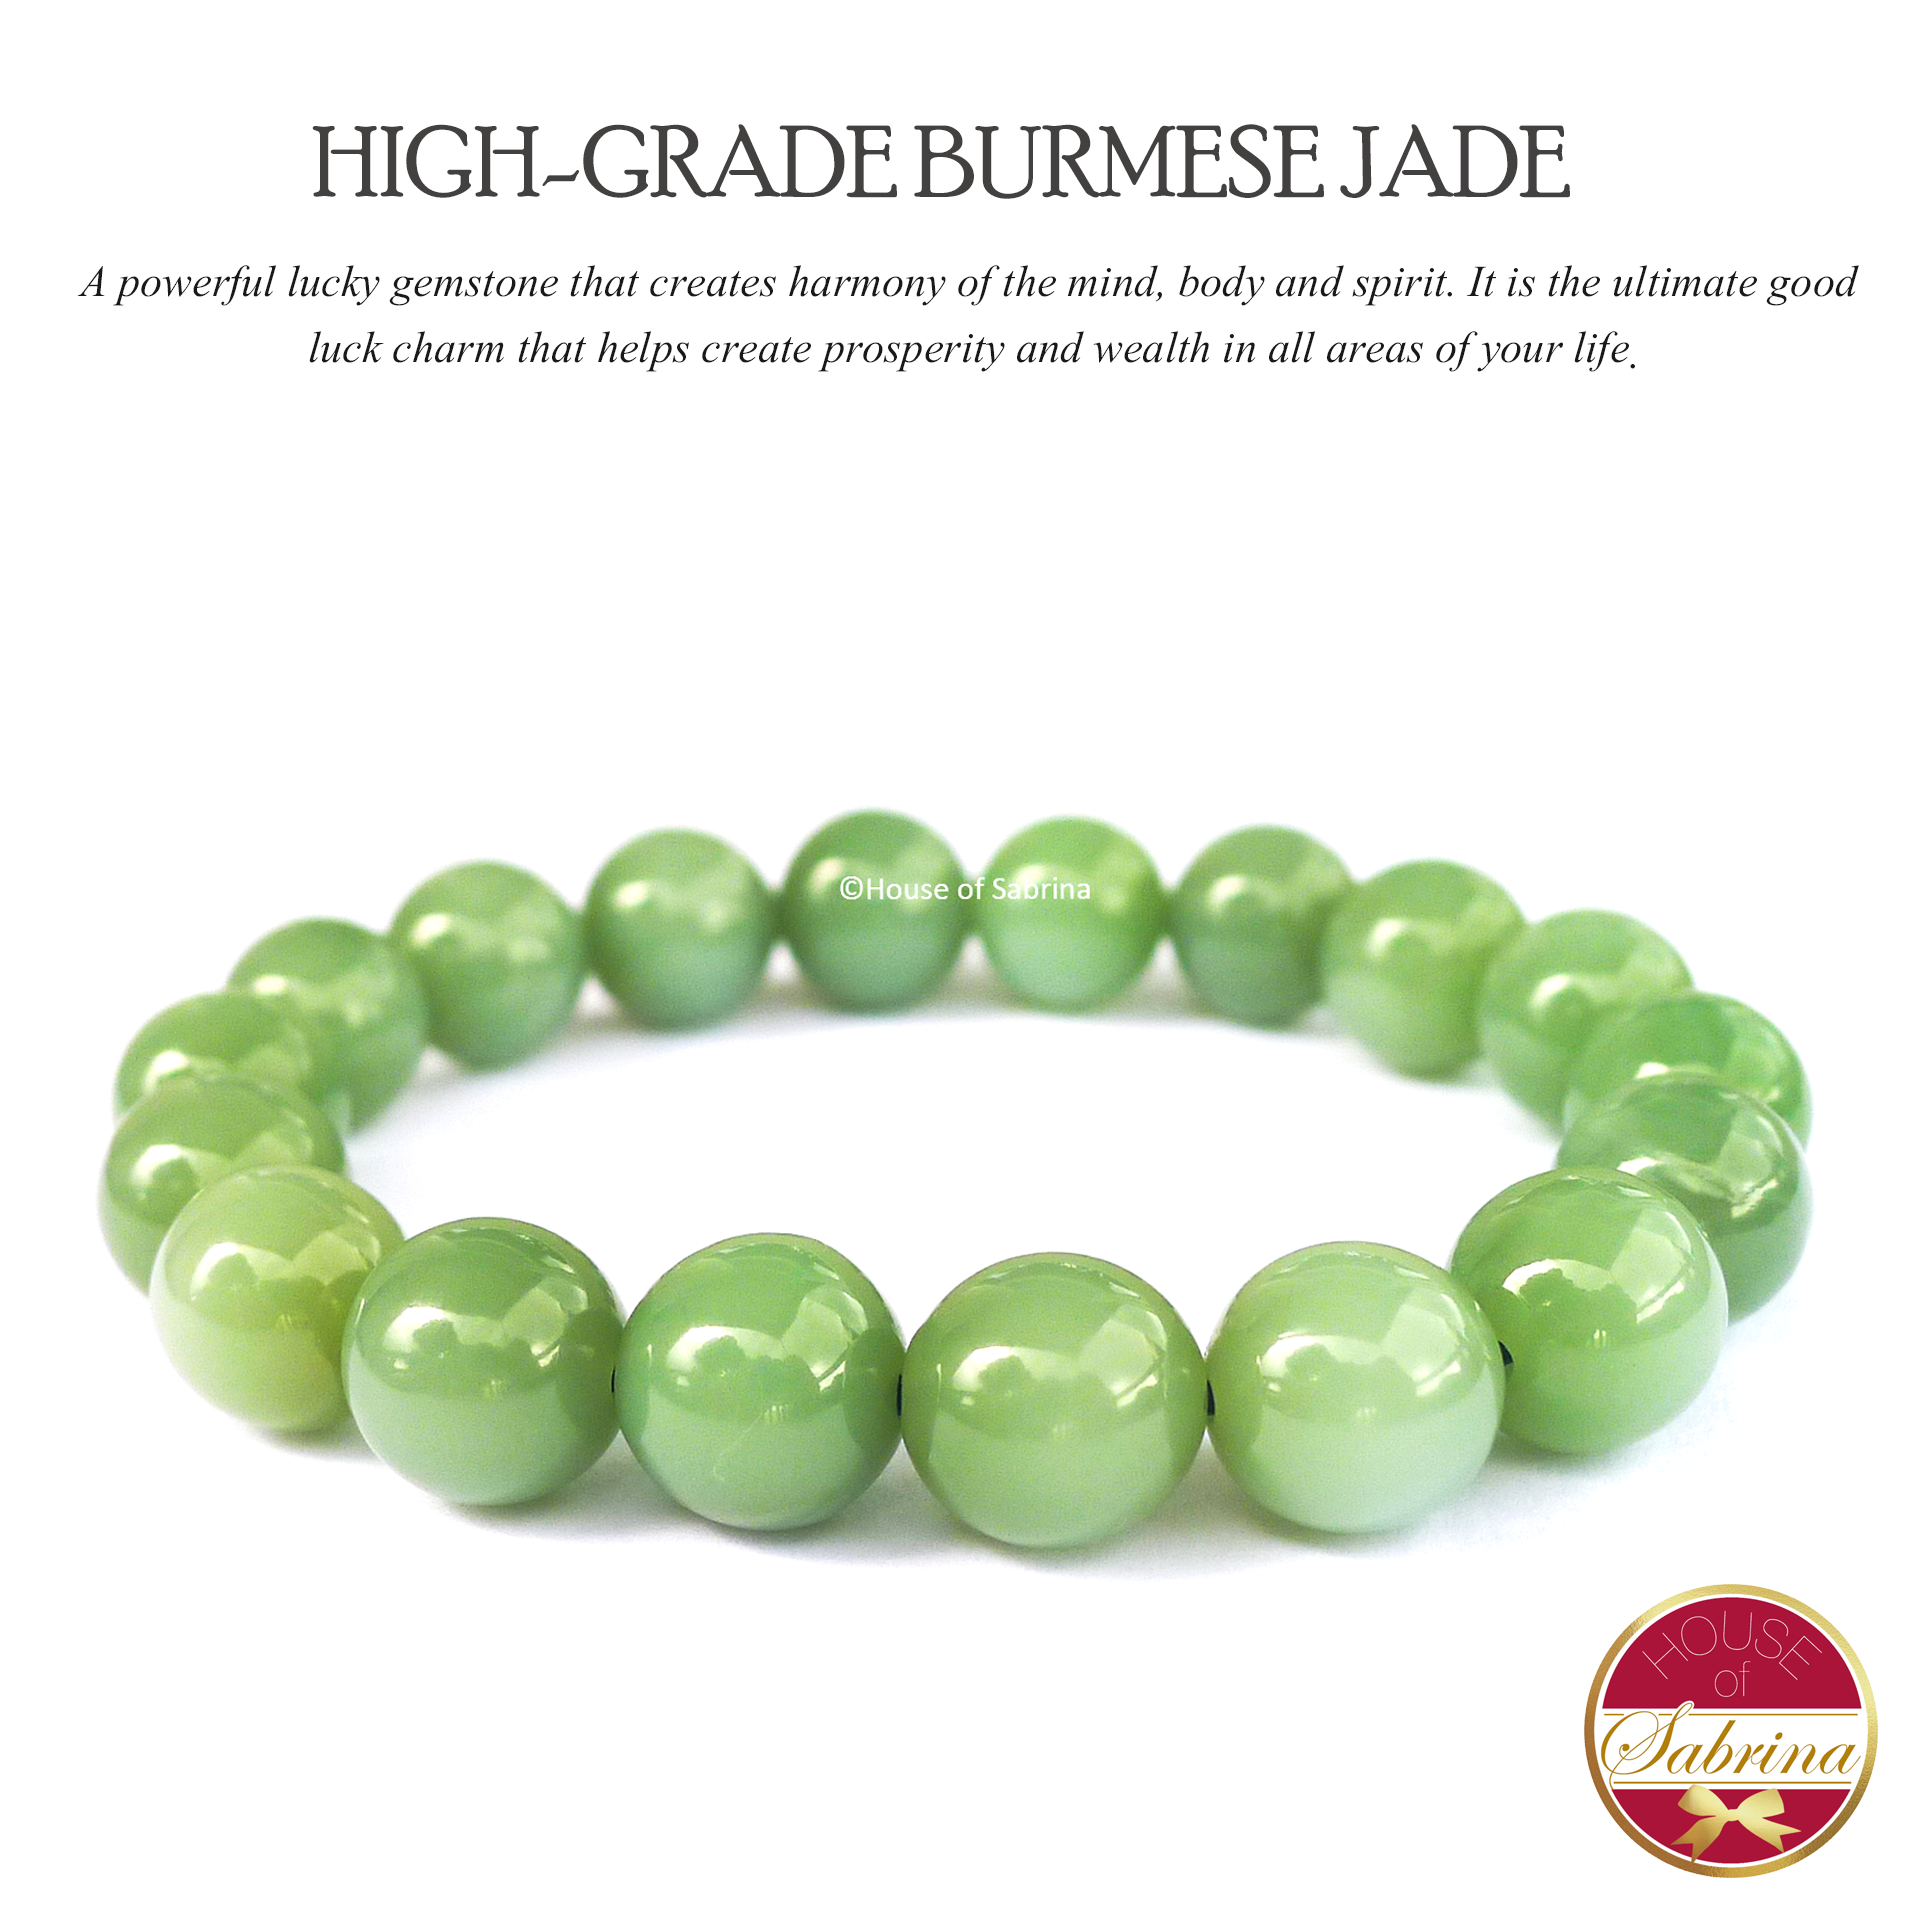 High-Grade Burmese Jade Gemstone Bracelet